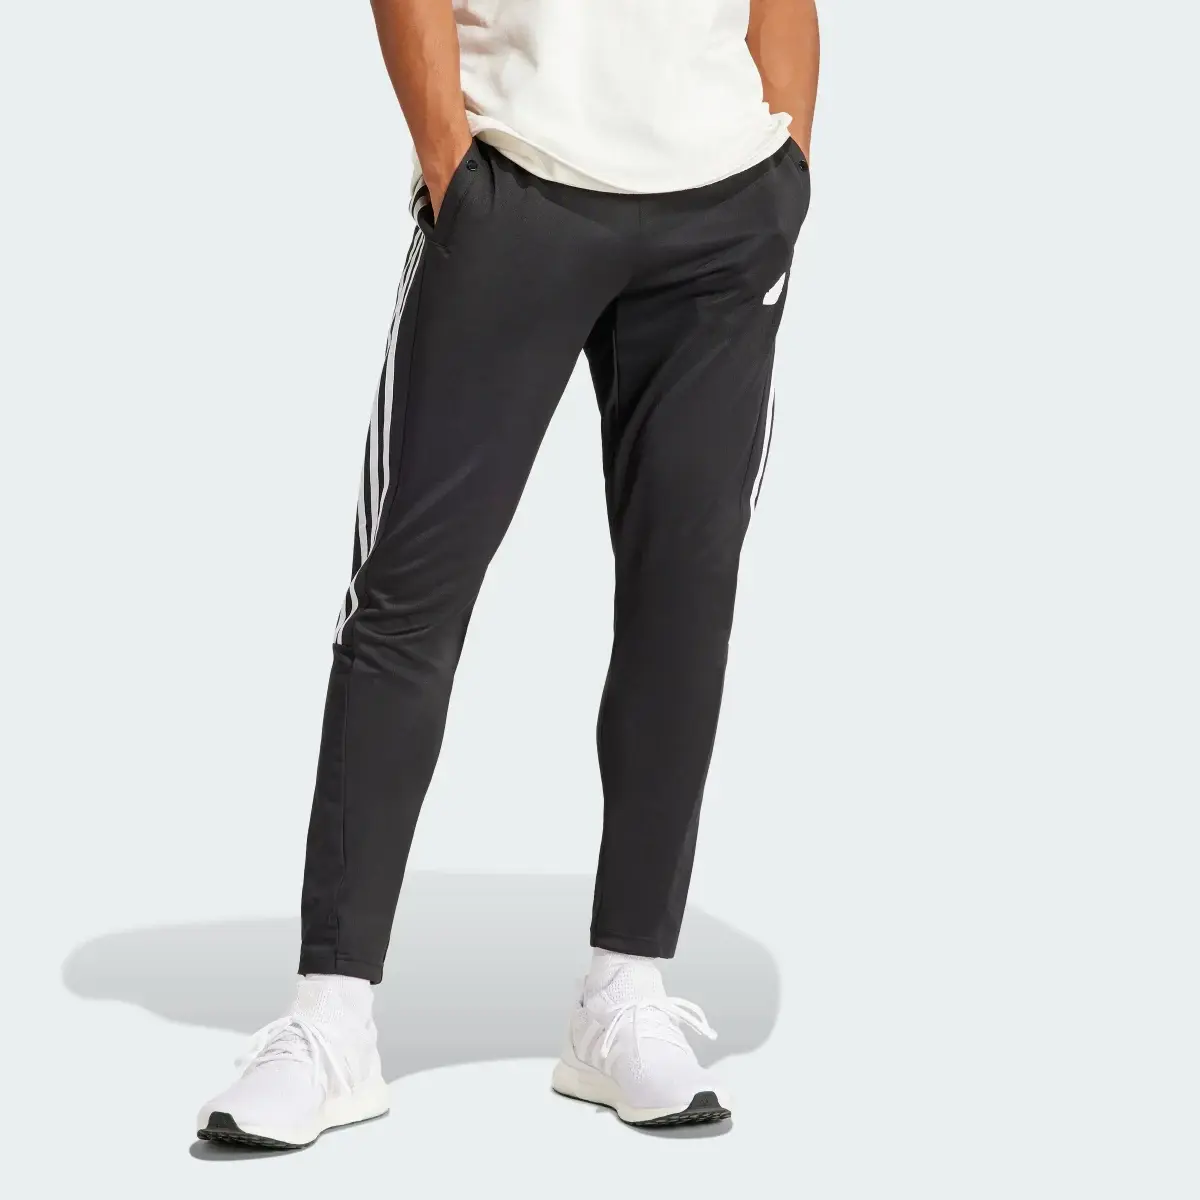 Adidas Tiro Material Mix Pants. 2